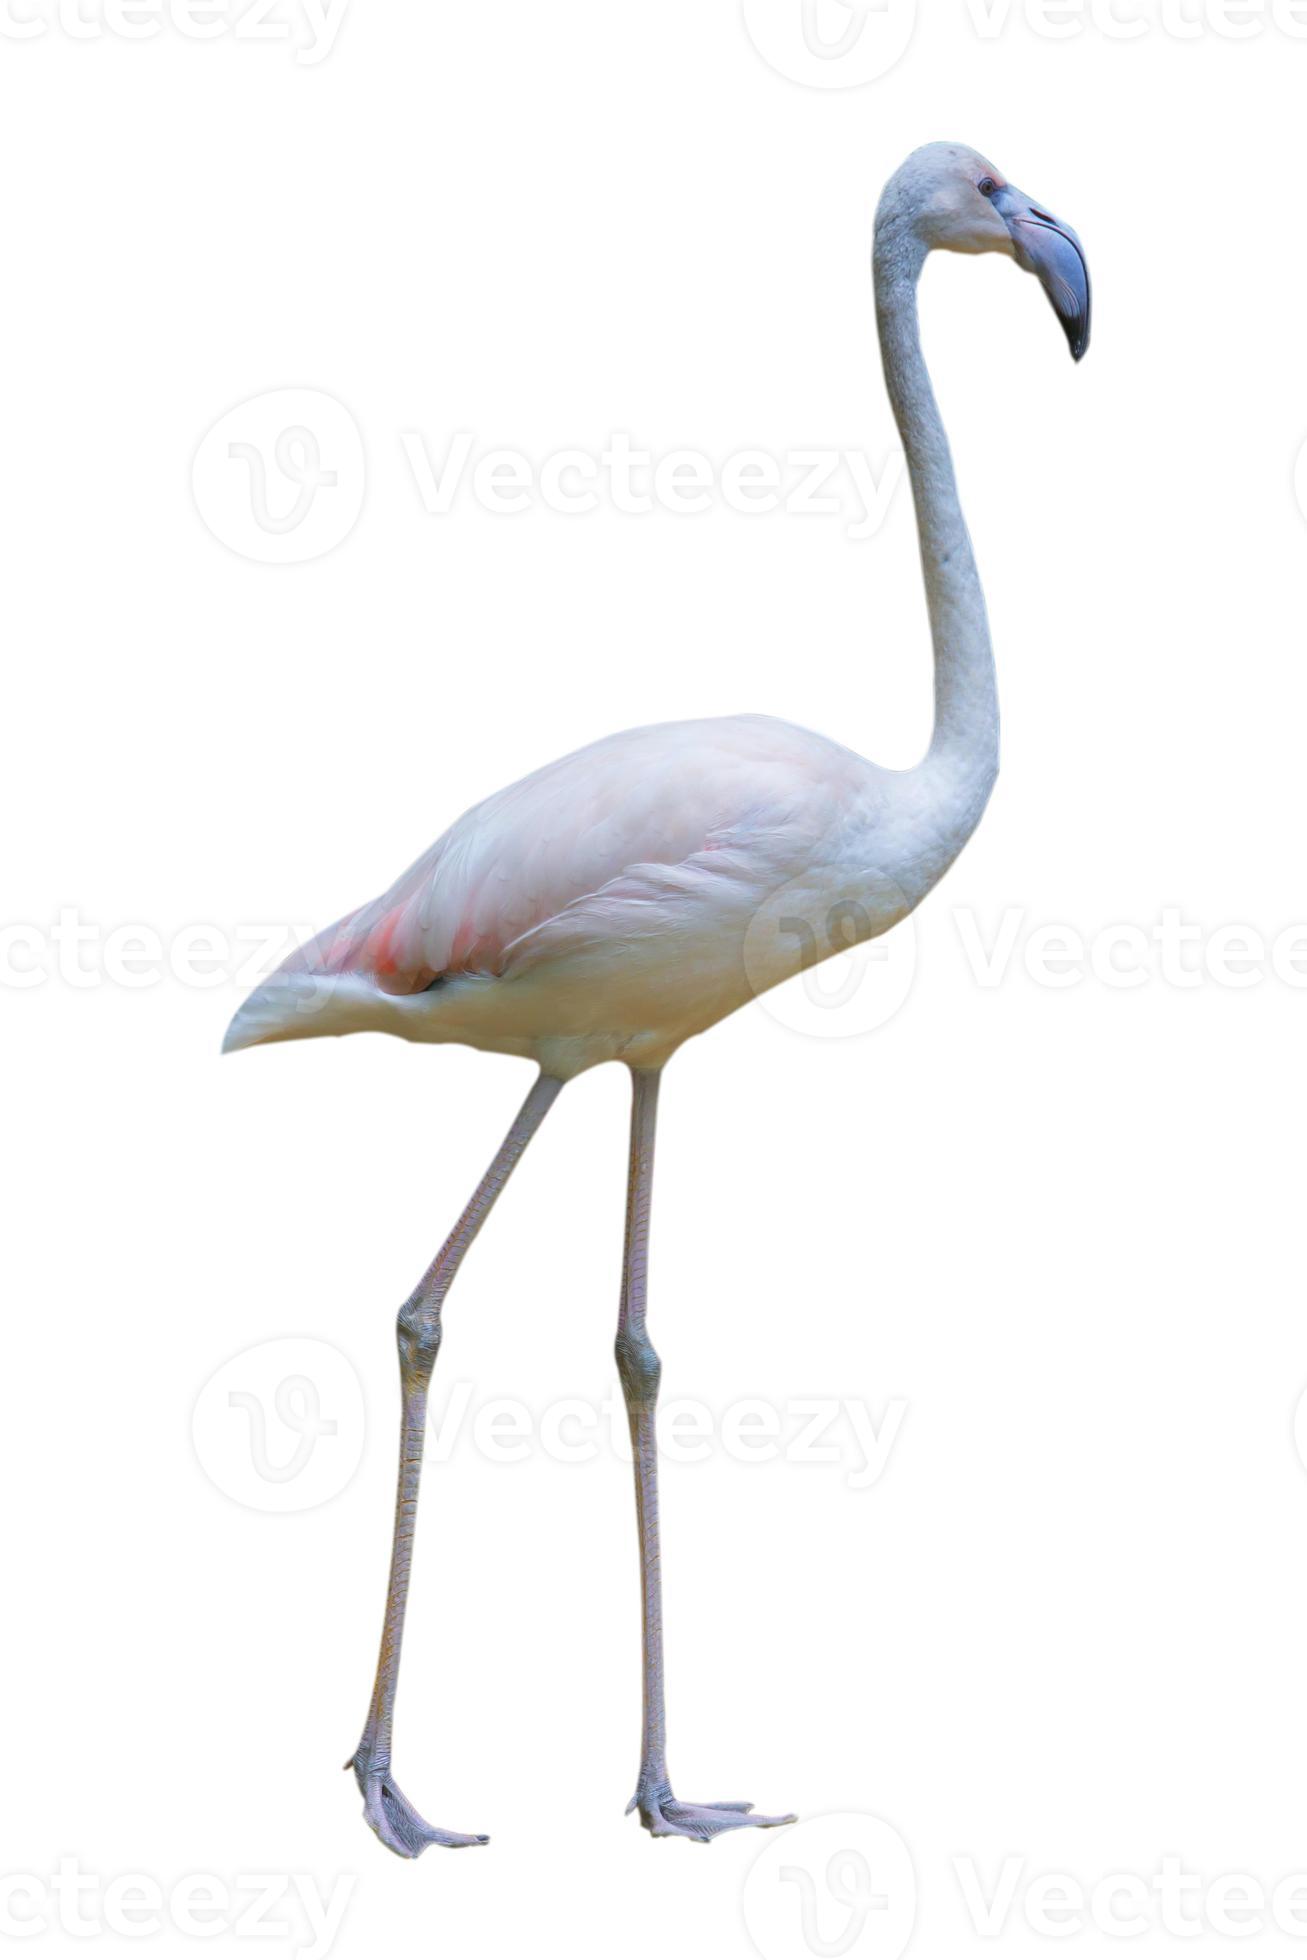 doden Omleiden verdediging flamingo geïsoleerd op een witte achtergrond 844386 Stockfoto